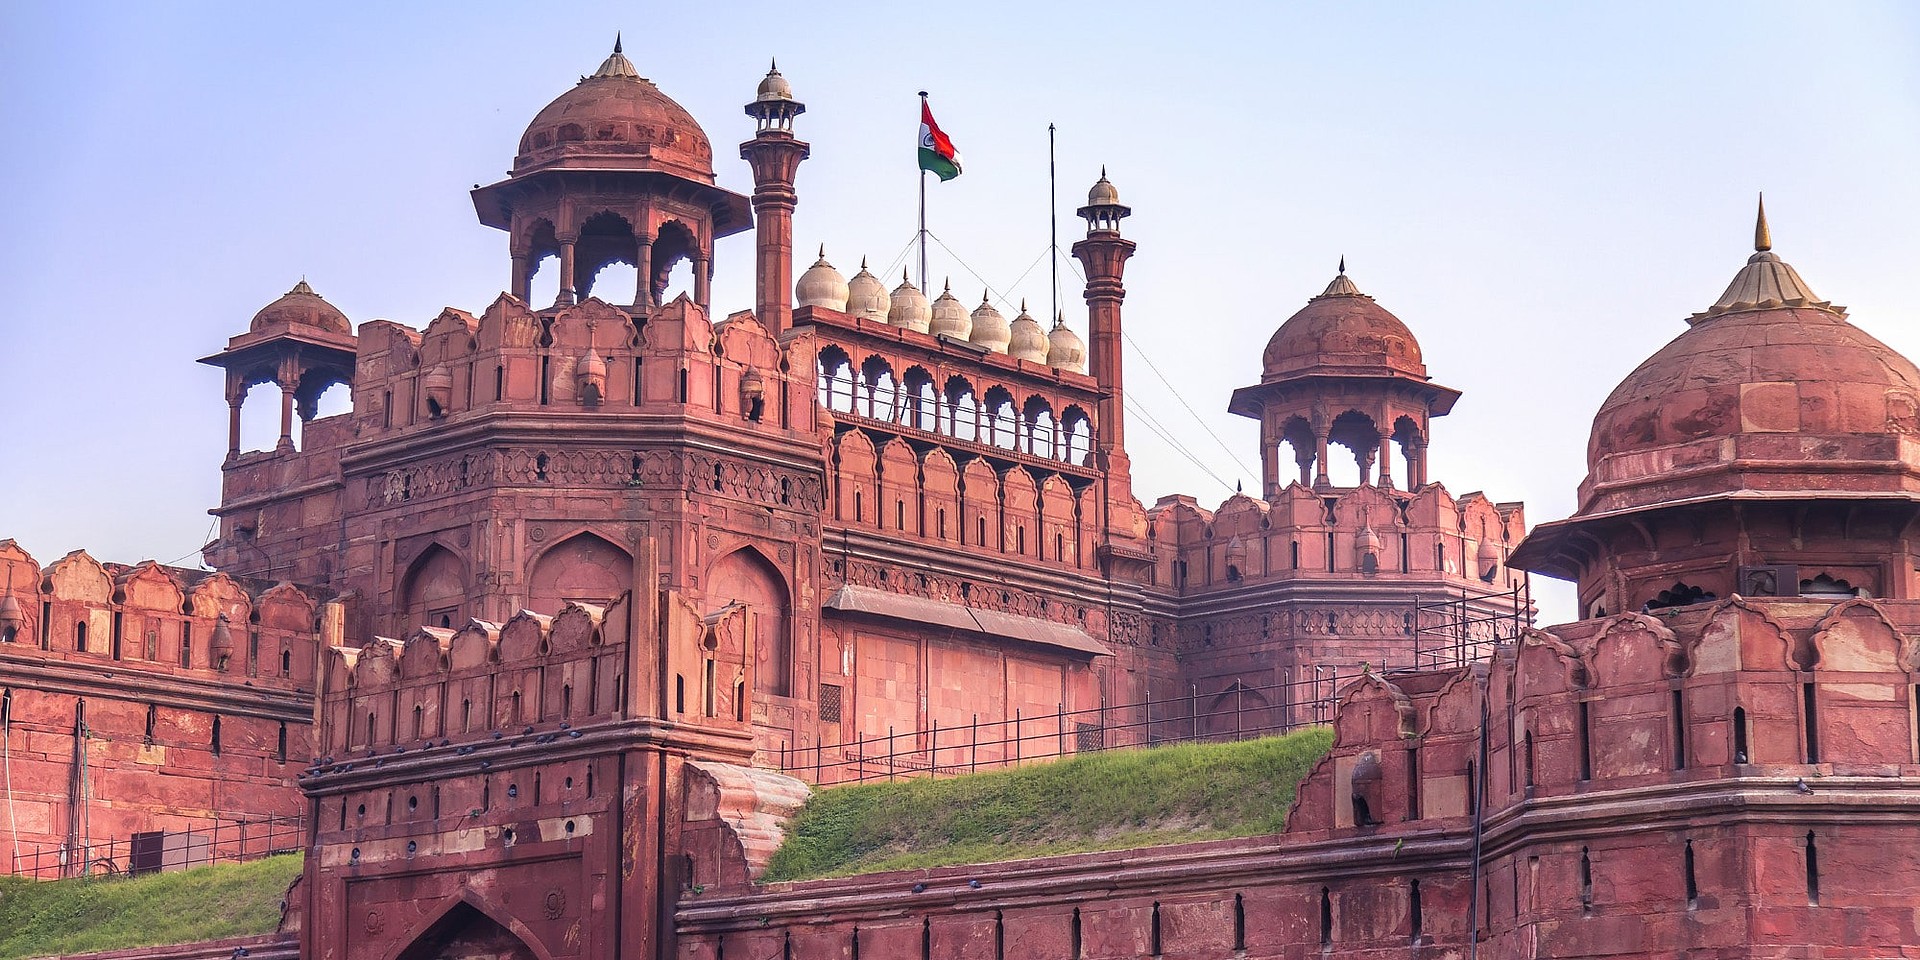 Das Rote Fort in Delhi, eine beeindruckende Palastanlage aus der Epoche des Mogulreiches. © Incredible India